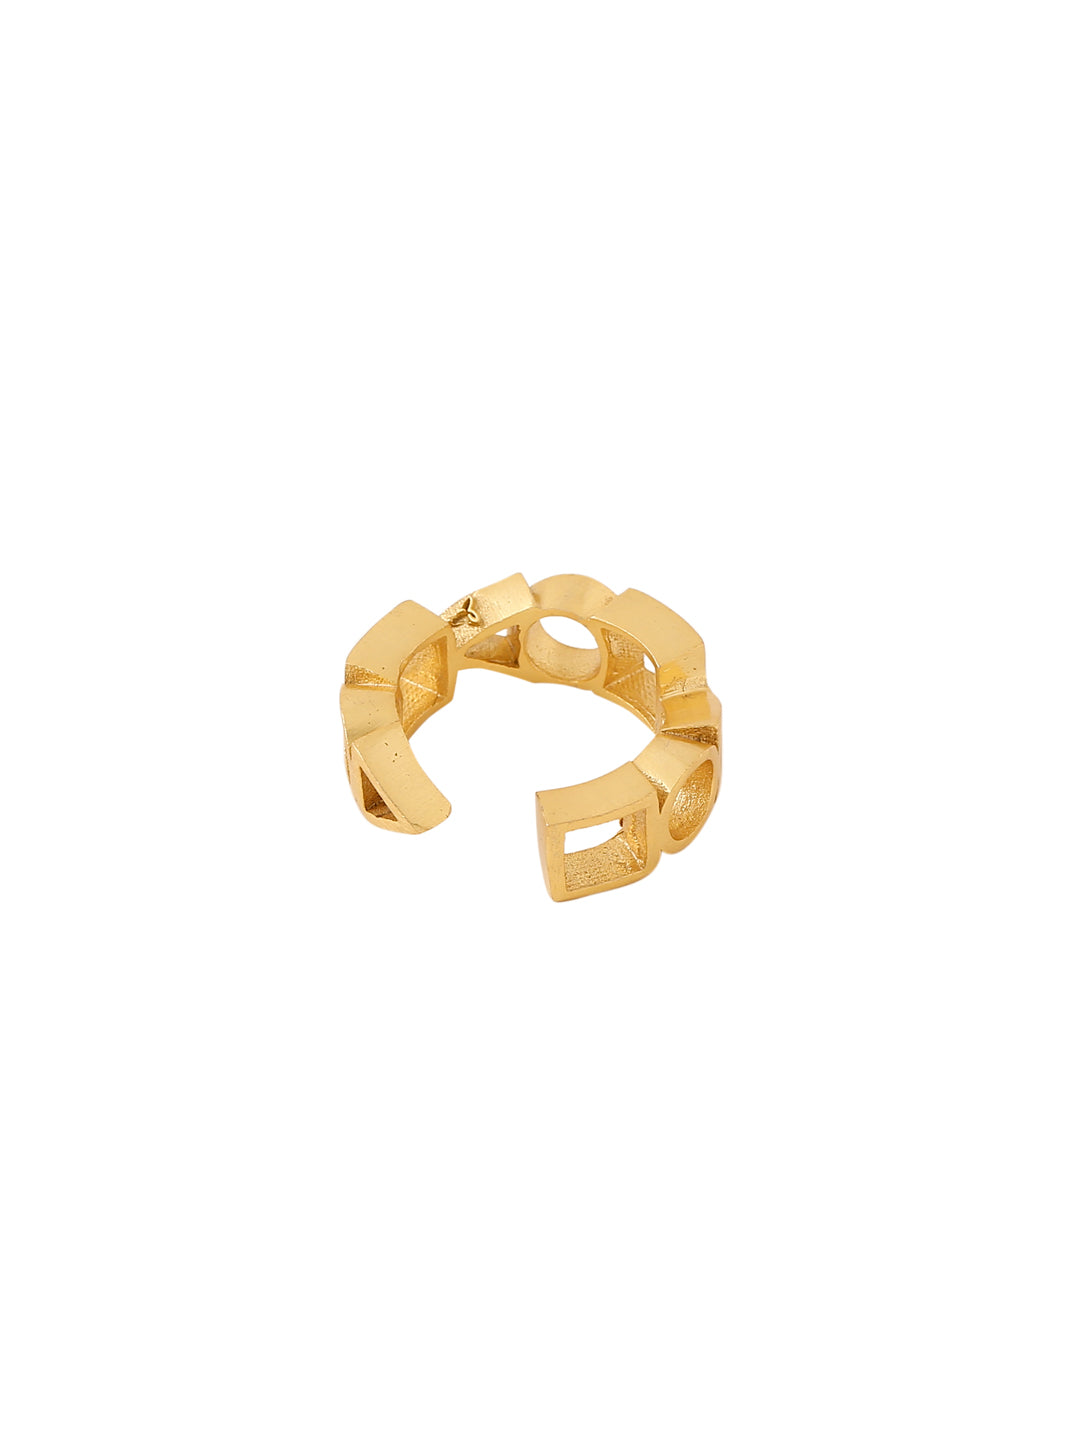 Ludic Ring - Golden